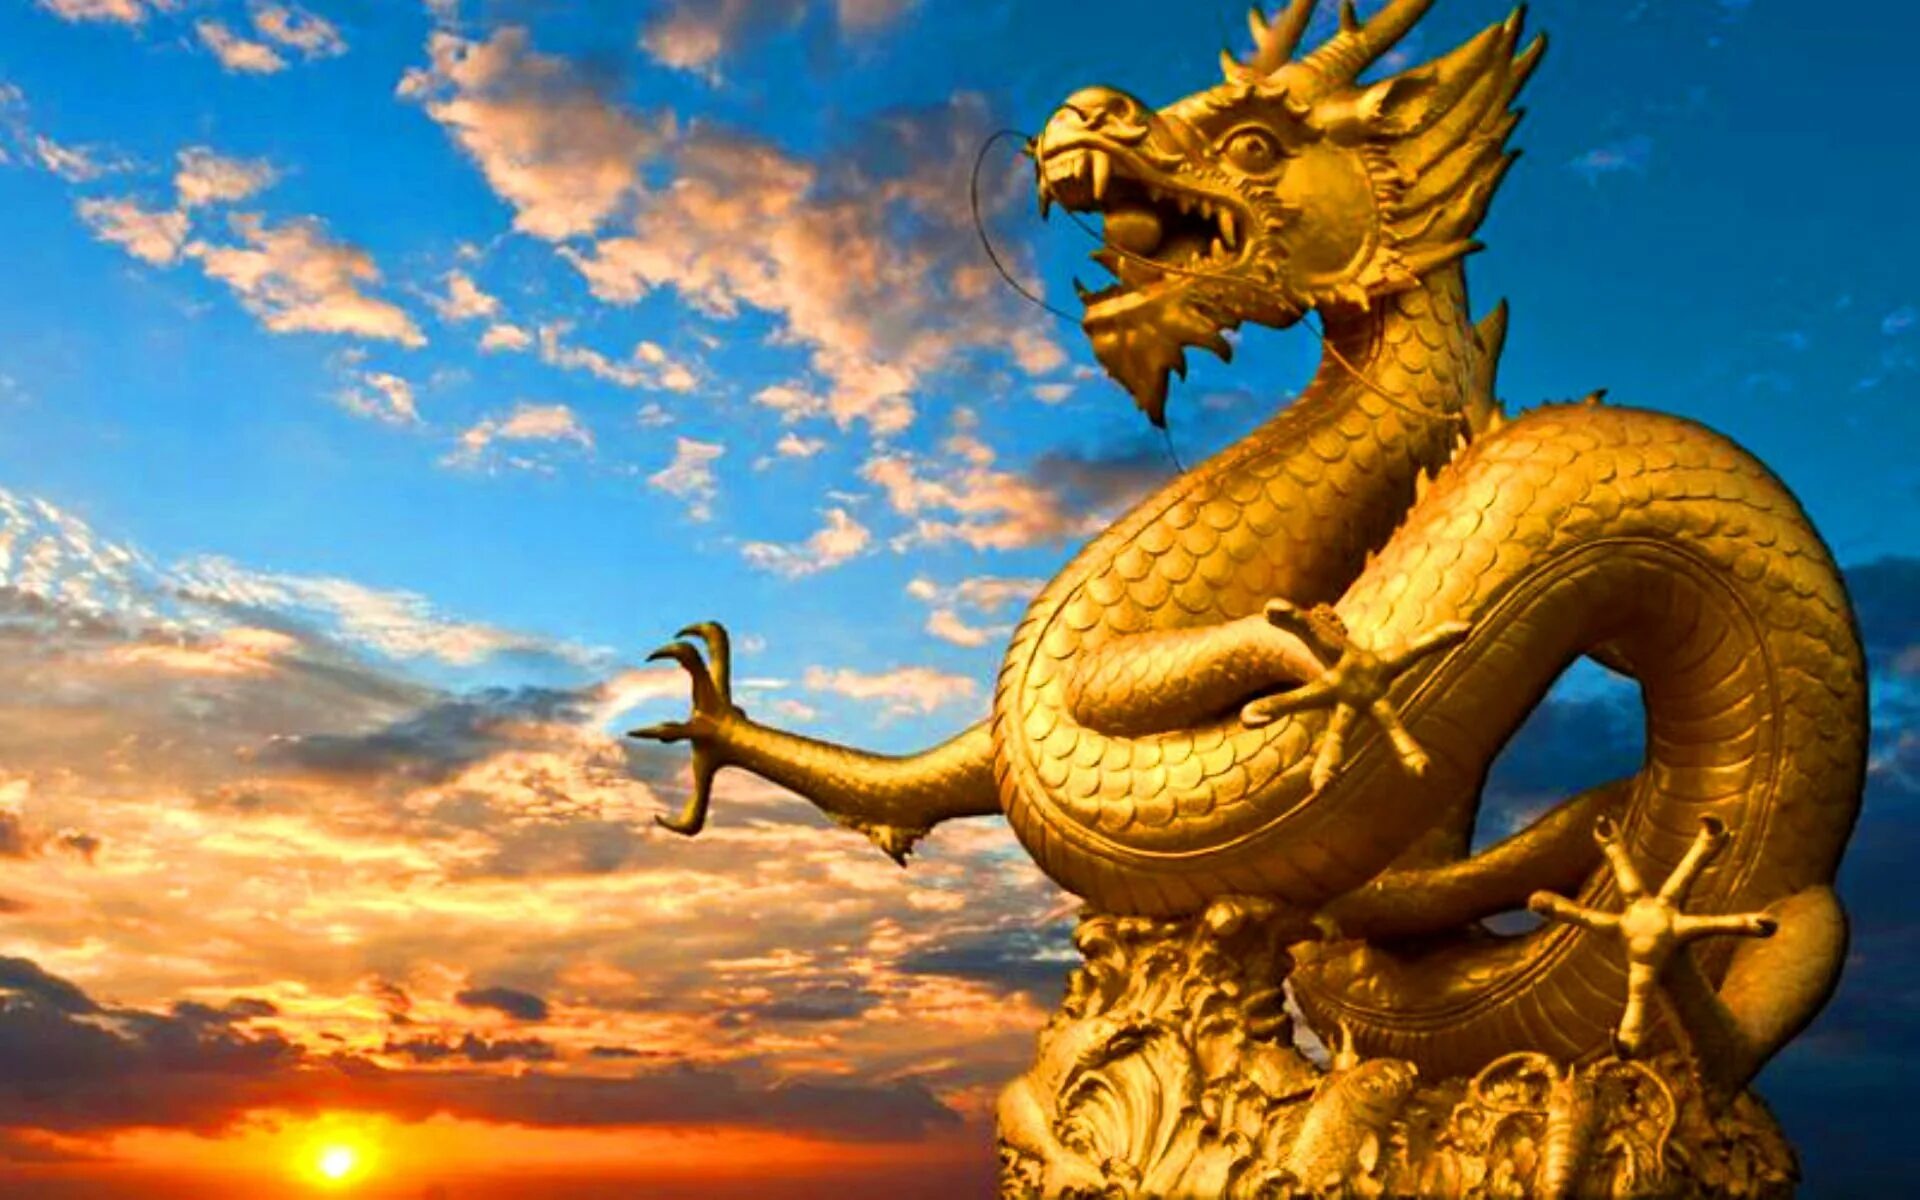 Статуя золотого дракона Китай. Zolotoy Drakon/золотой дракон. Желтый дракон Китай. Золотой китайский дракон статуя.